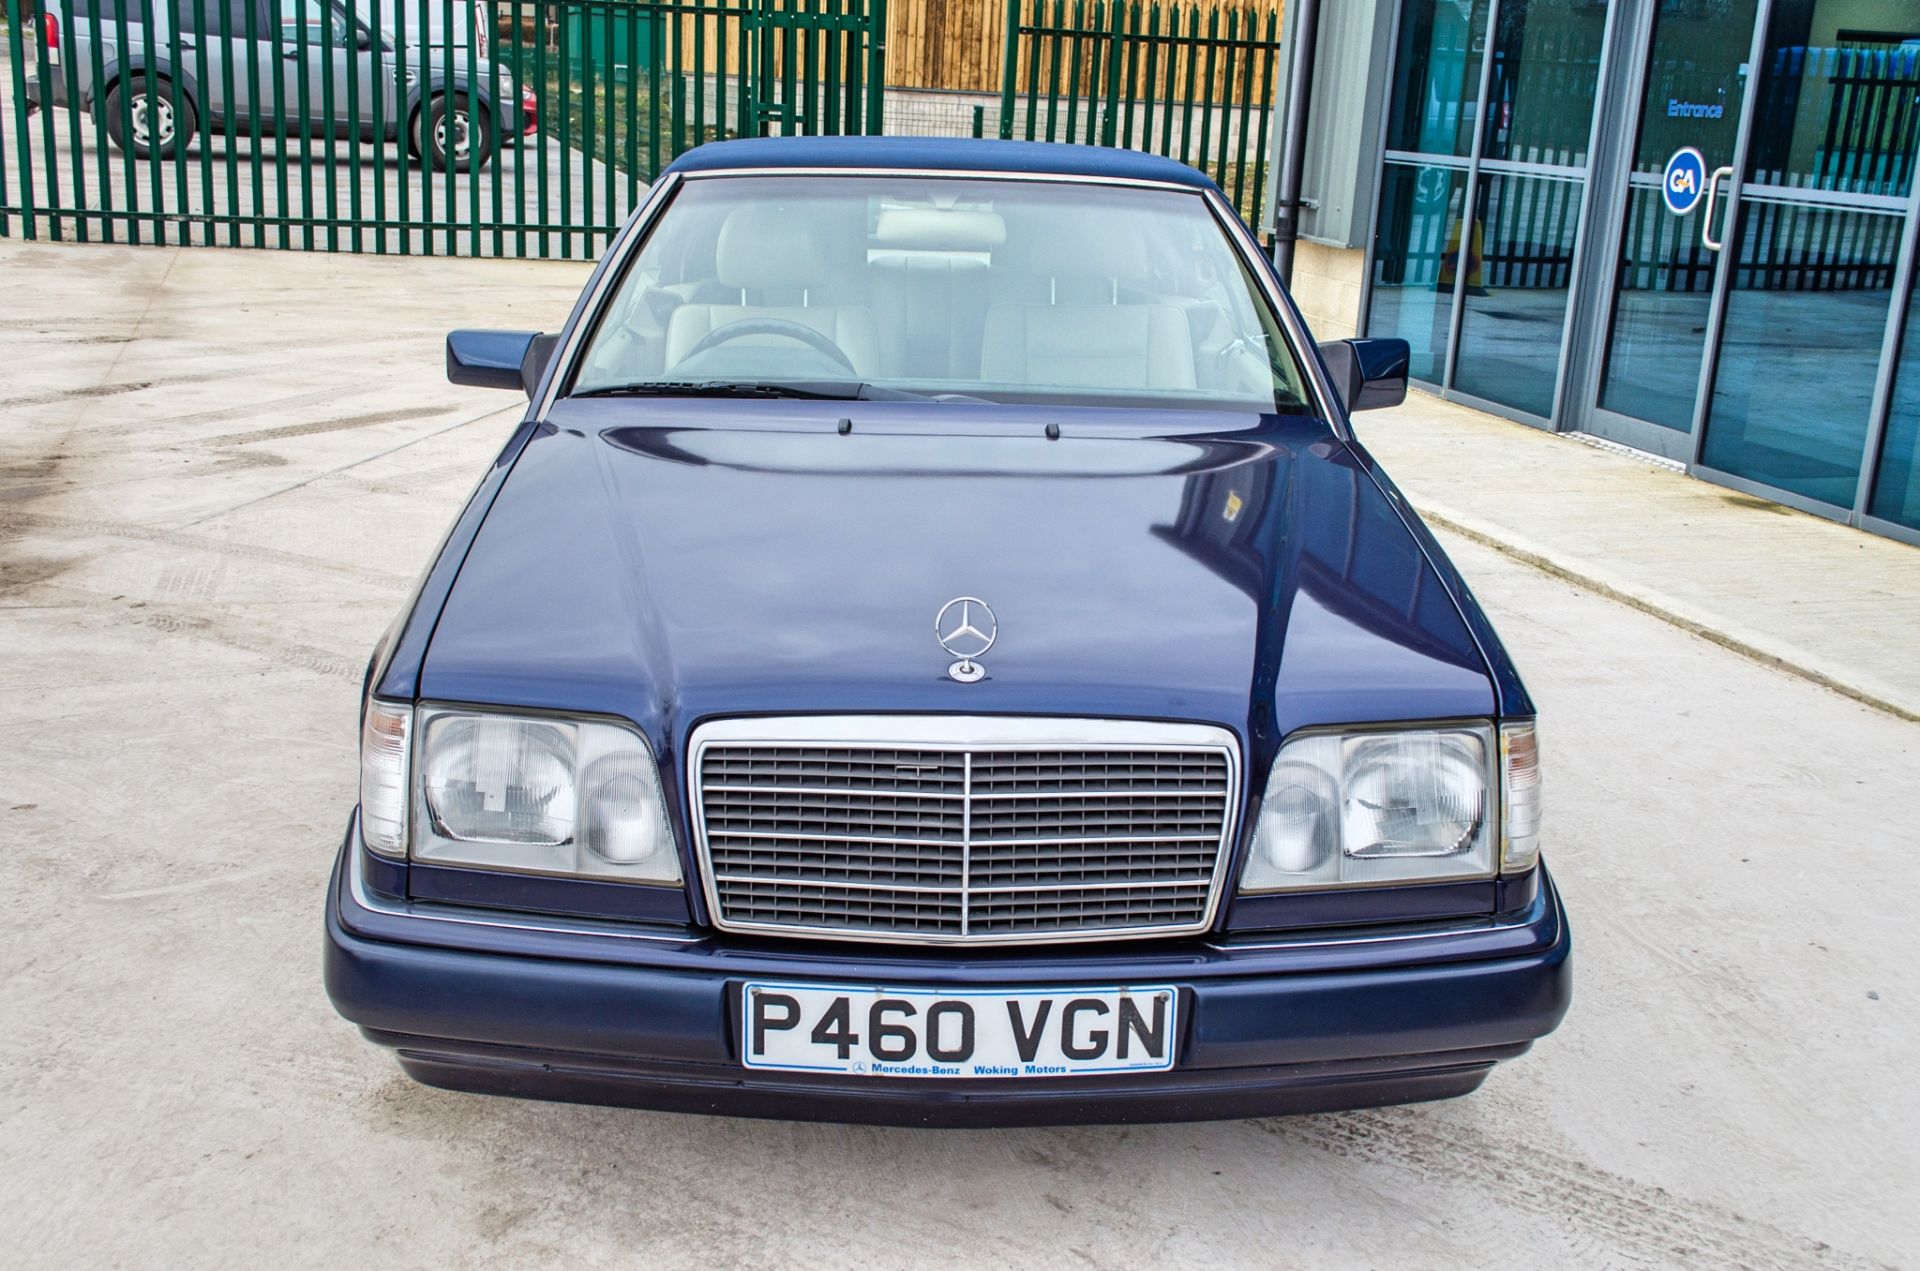 1997 Mercedes E220 2.2 litre 2 door cabriolet Registration: P460VGN Chassis: WDB1240622C292059 - Image 26 of 60